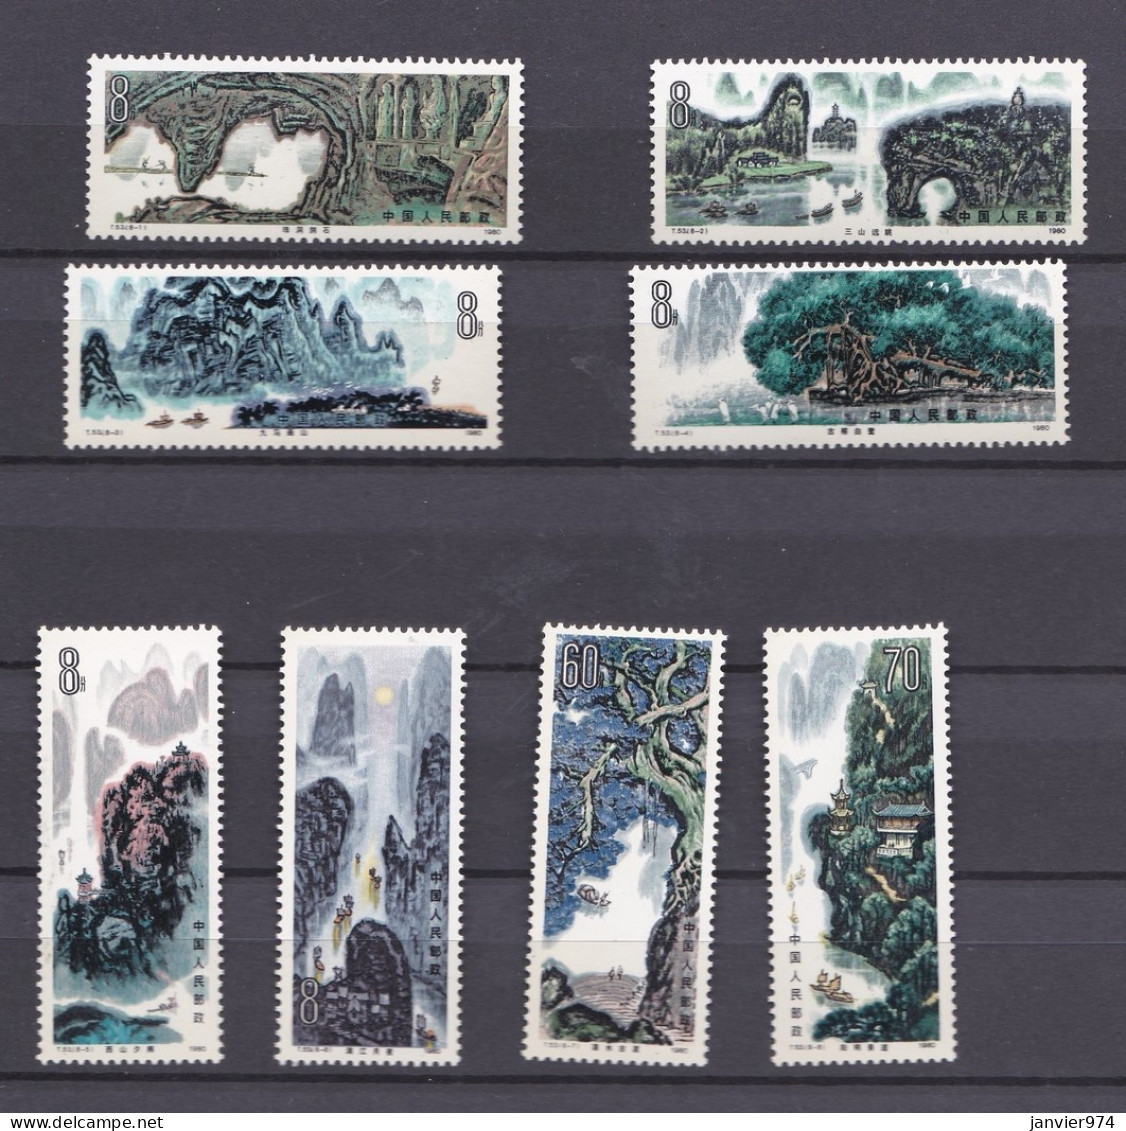 Chine 1980 , La Serie Complete Peintures De Paysages De Guilin, 8 Timbres Neufs  N° 1629 - 1636 - Ongebruikt